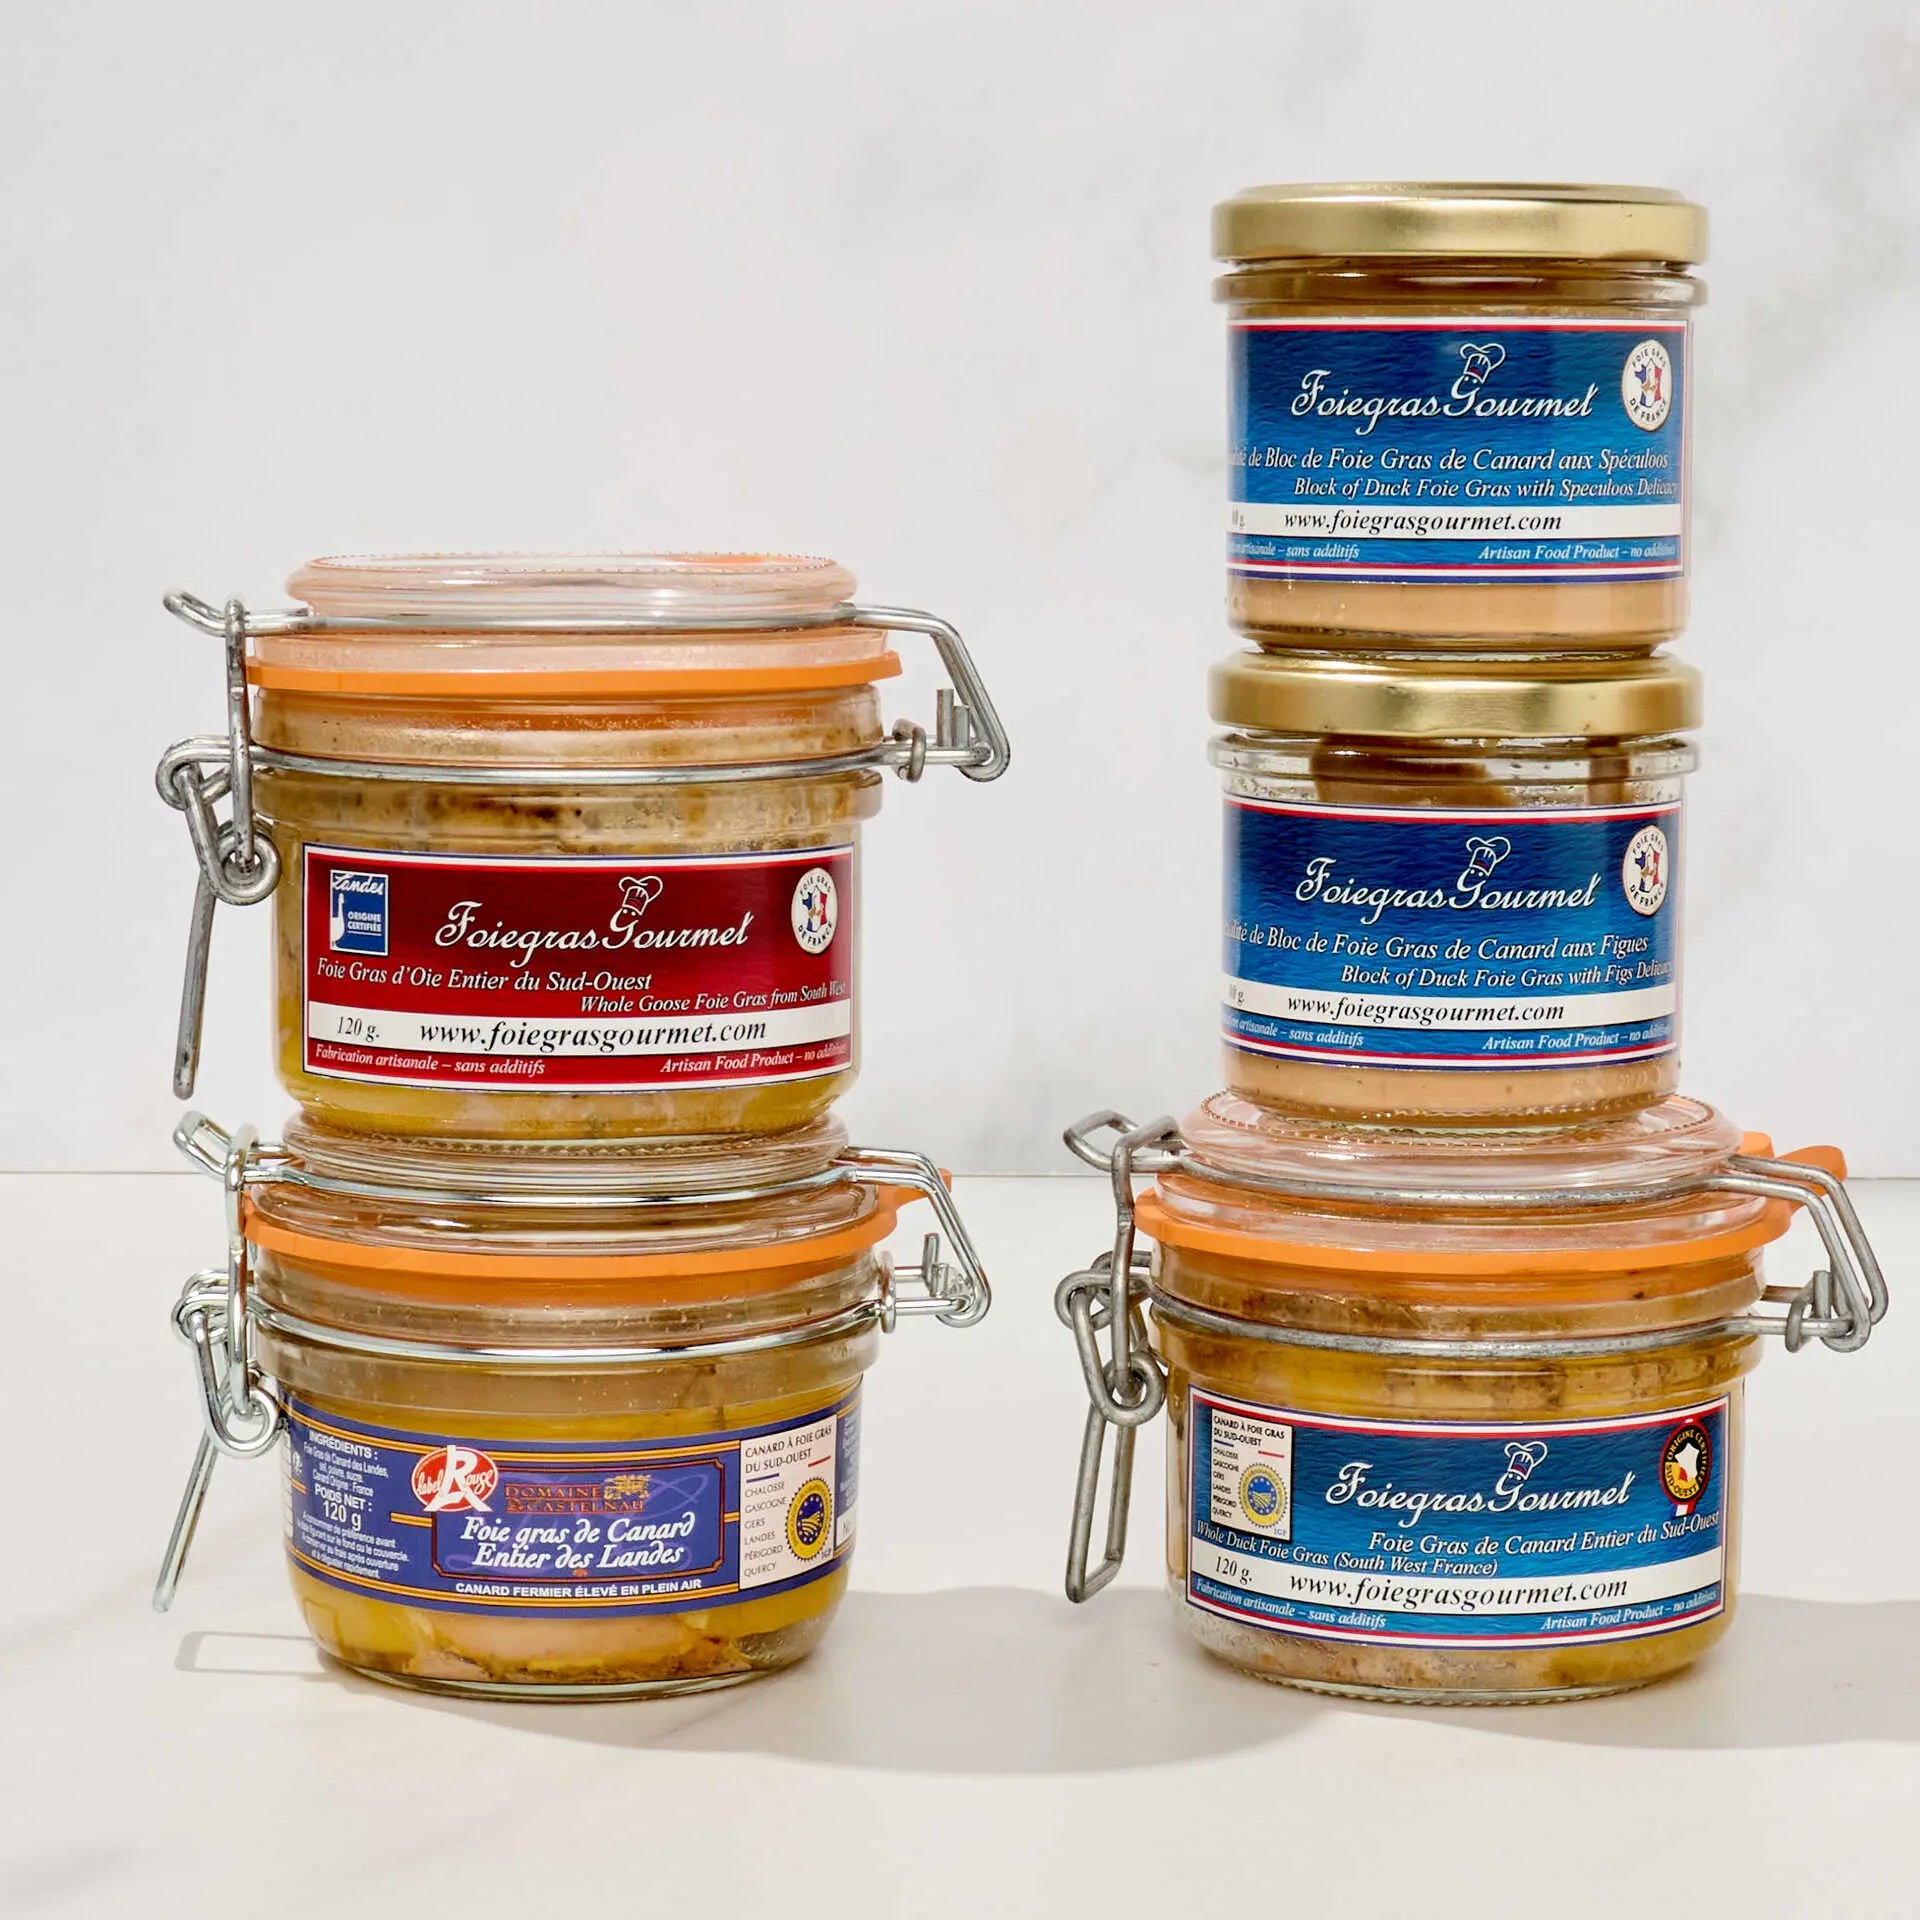 Coffret Lascaux avec spécialités à base de Canard et foie Gras